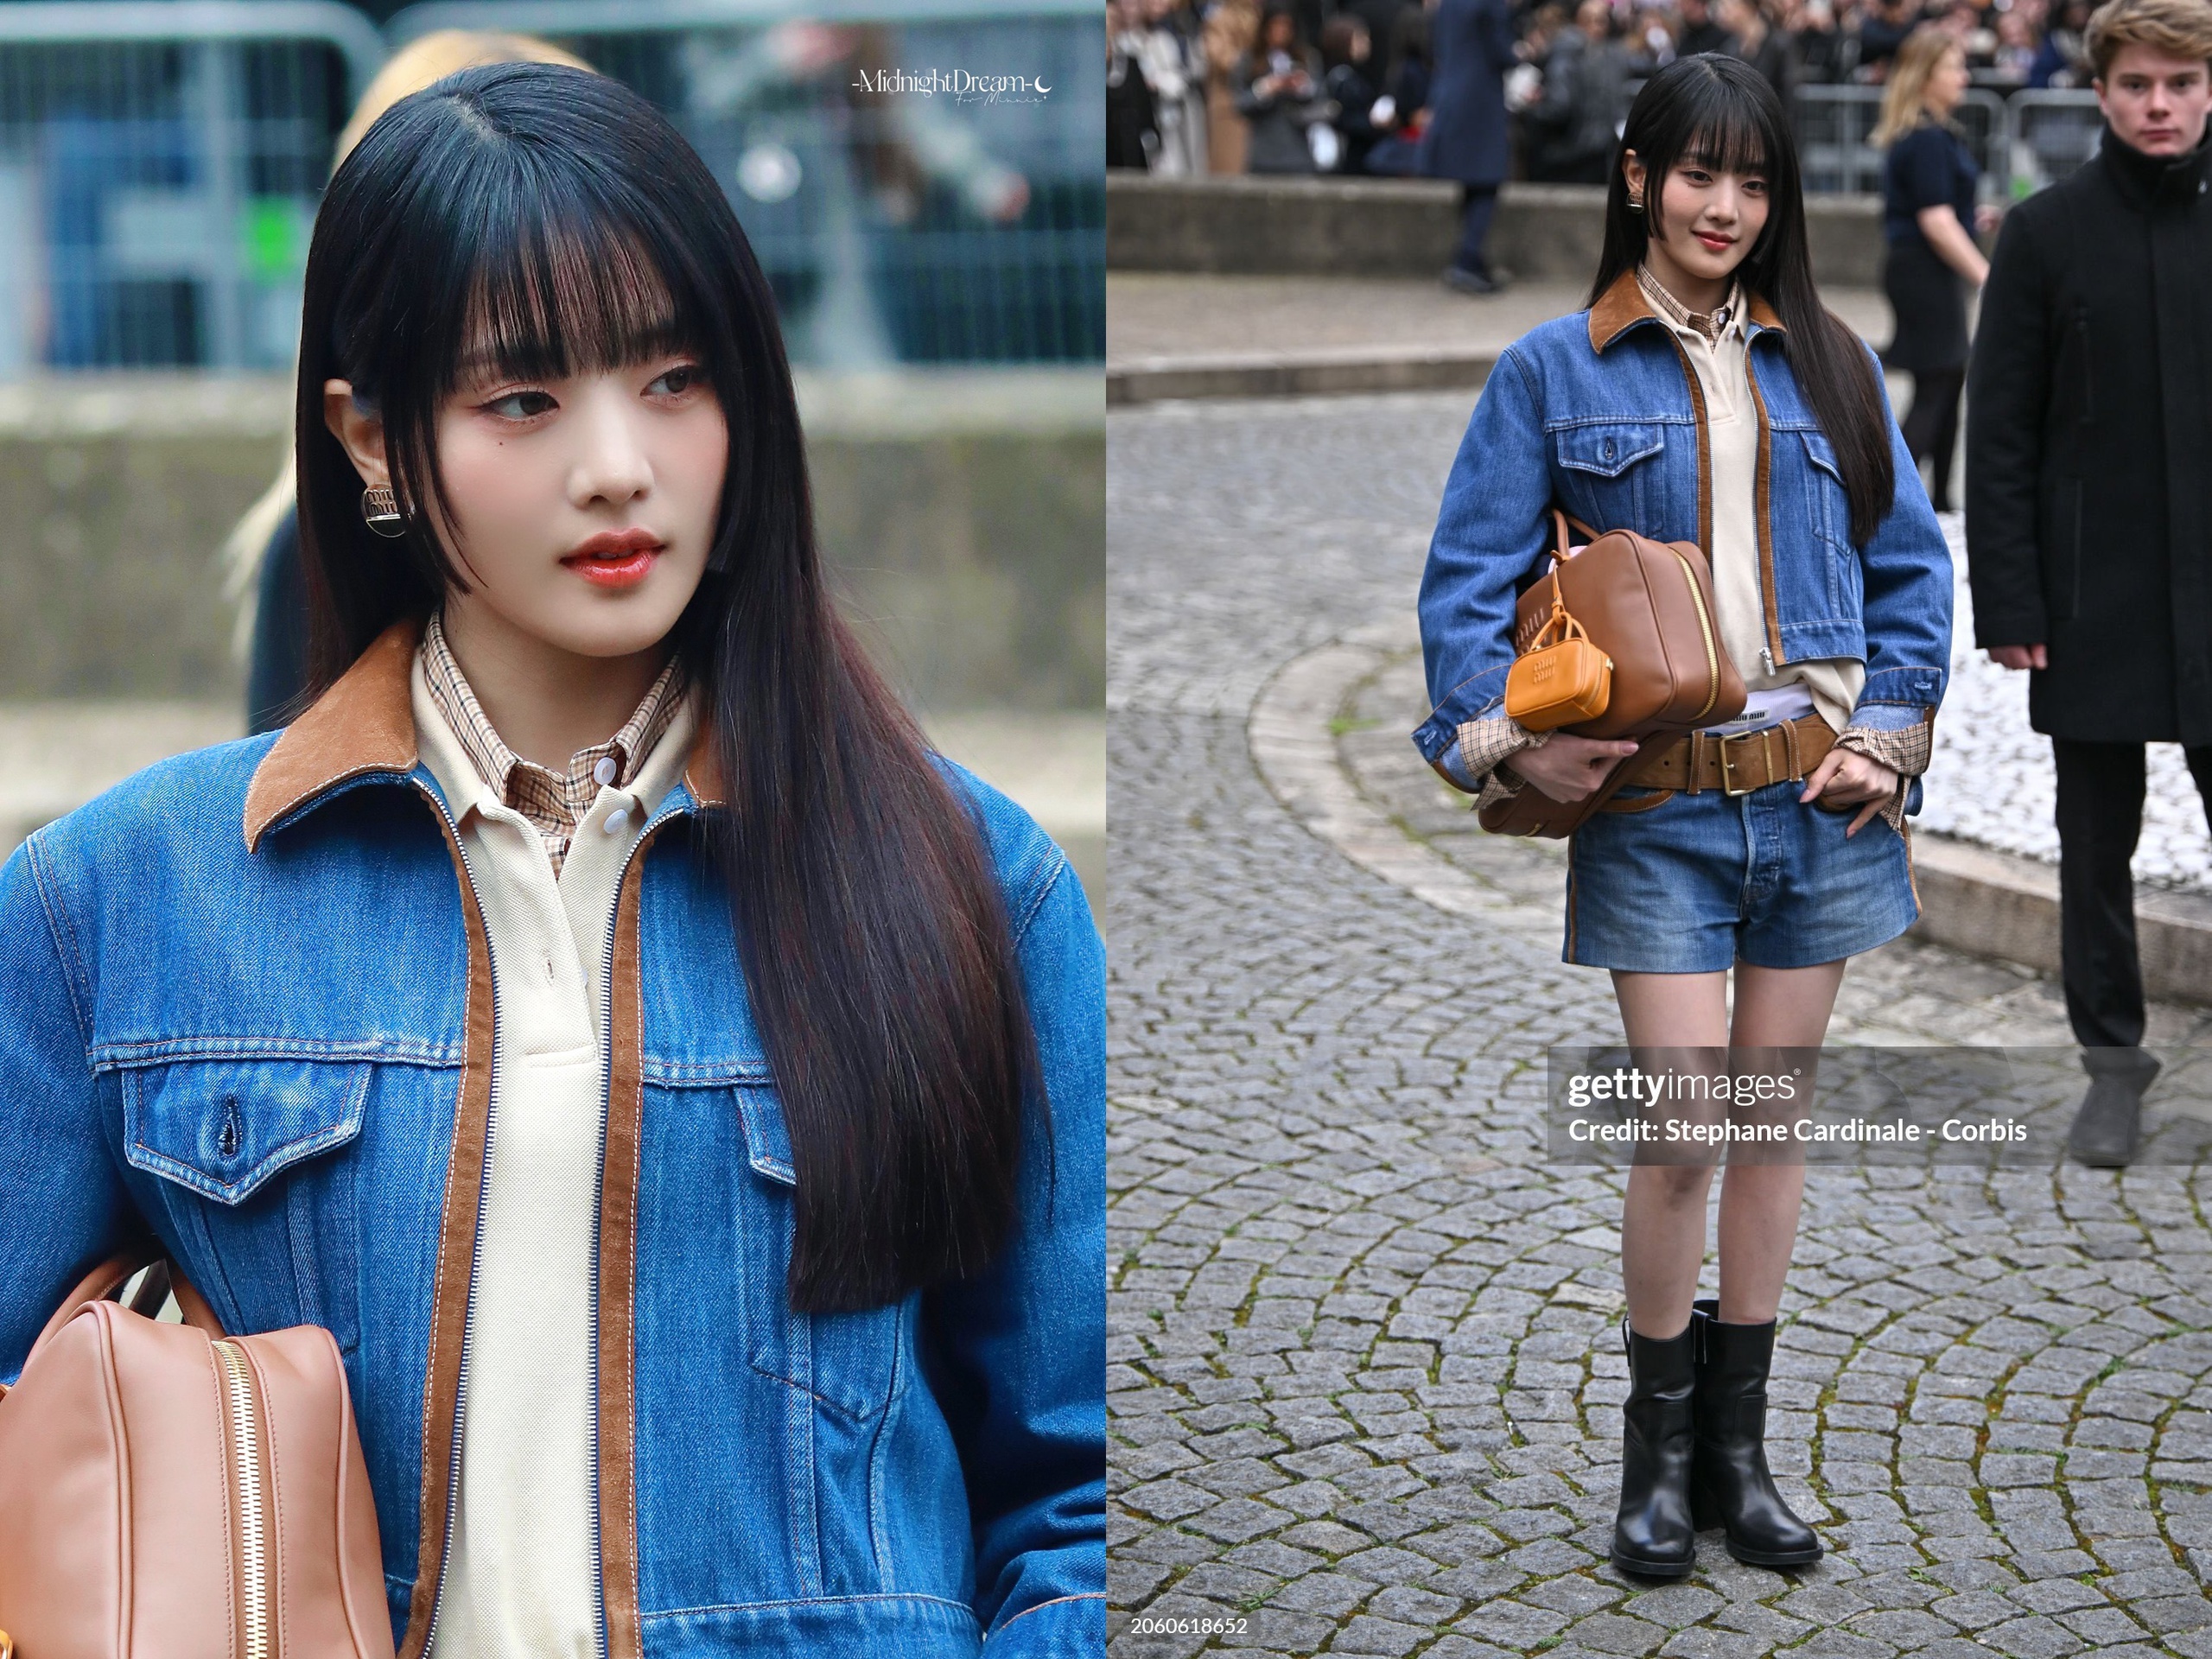 View - Dàn sao Thái qua “ống kính hung thần” Getty Images ở Paris Fashion Week: Lisa thần thái ngút ngàn, Baifern - Mai Davika và các mỹ nhân khác thì sao?